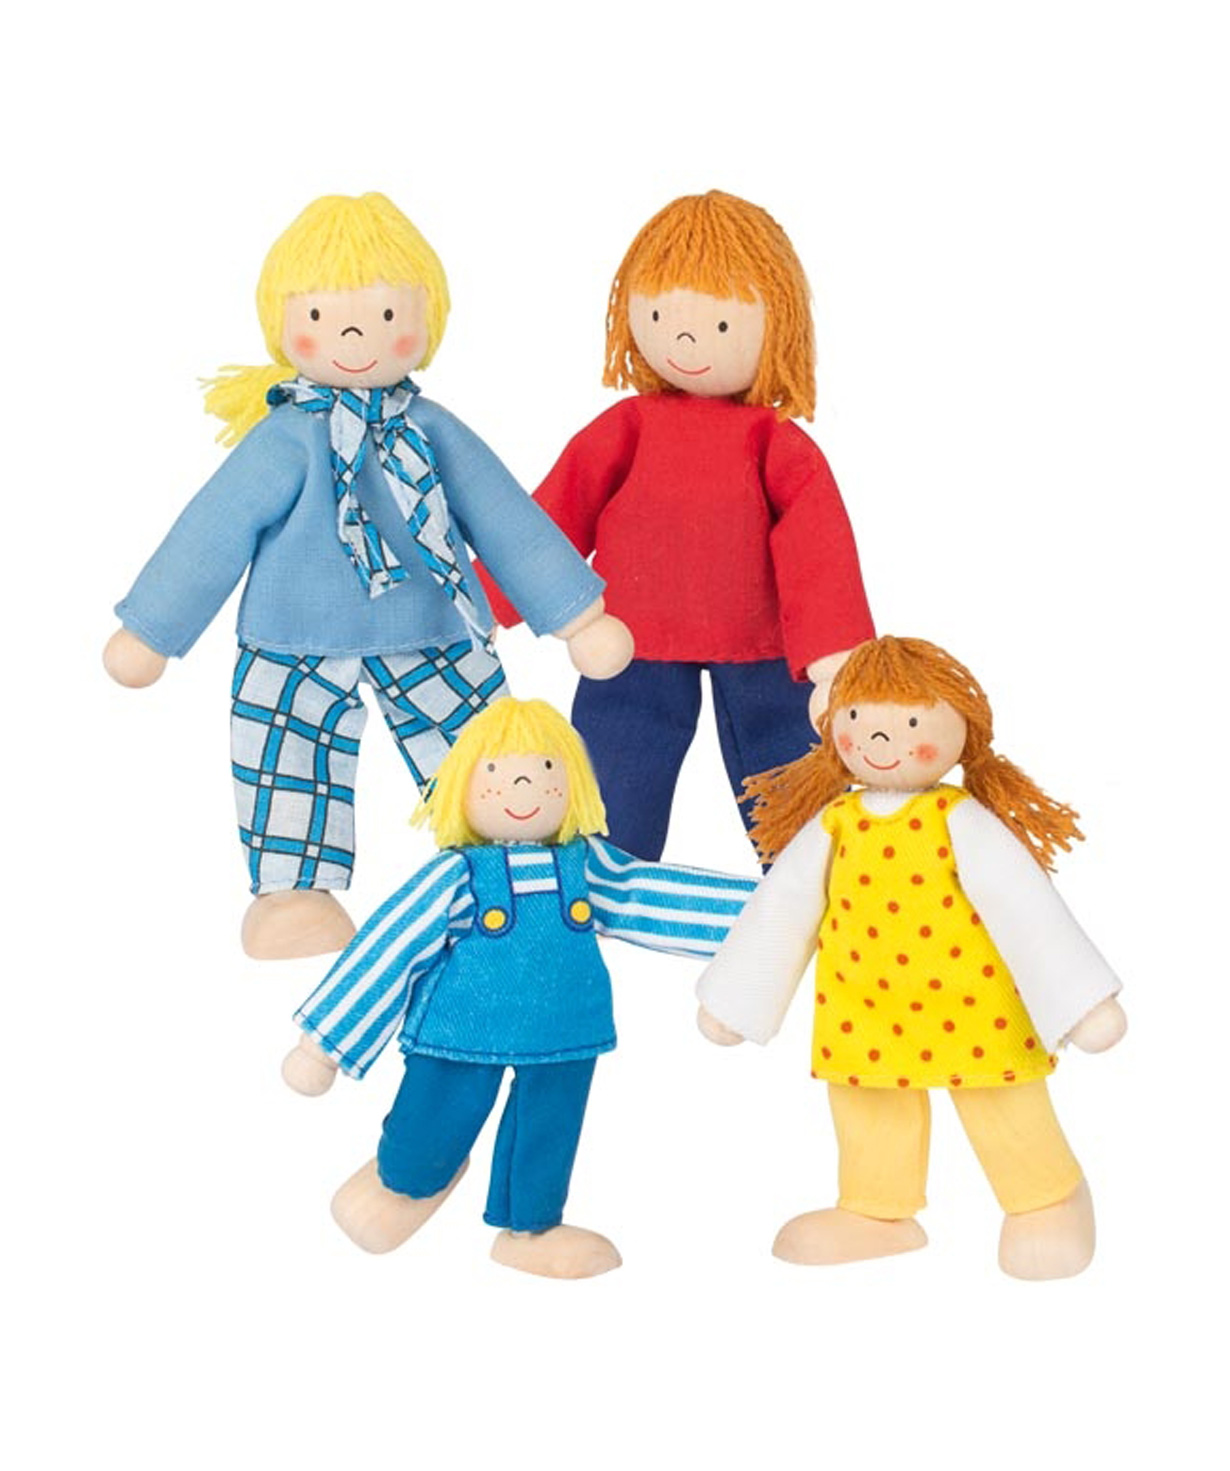 Խաղալիք «Goki Toys» ճկուն տիկնիկներ Young Family